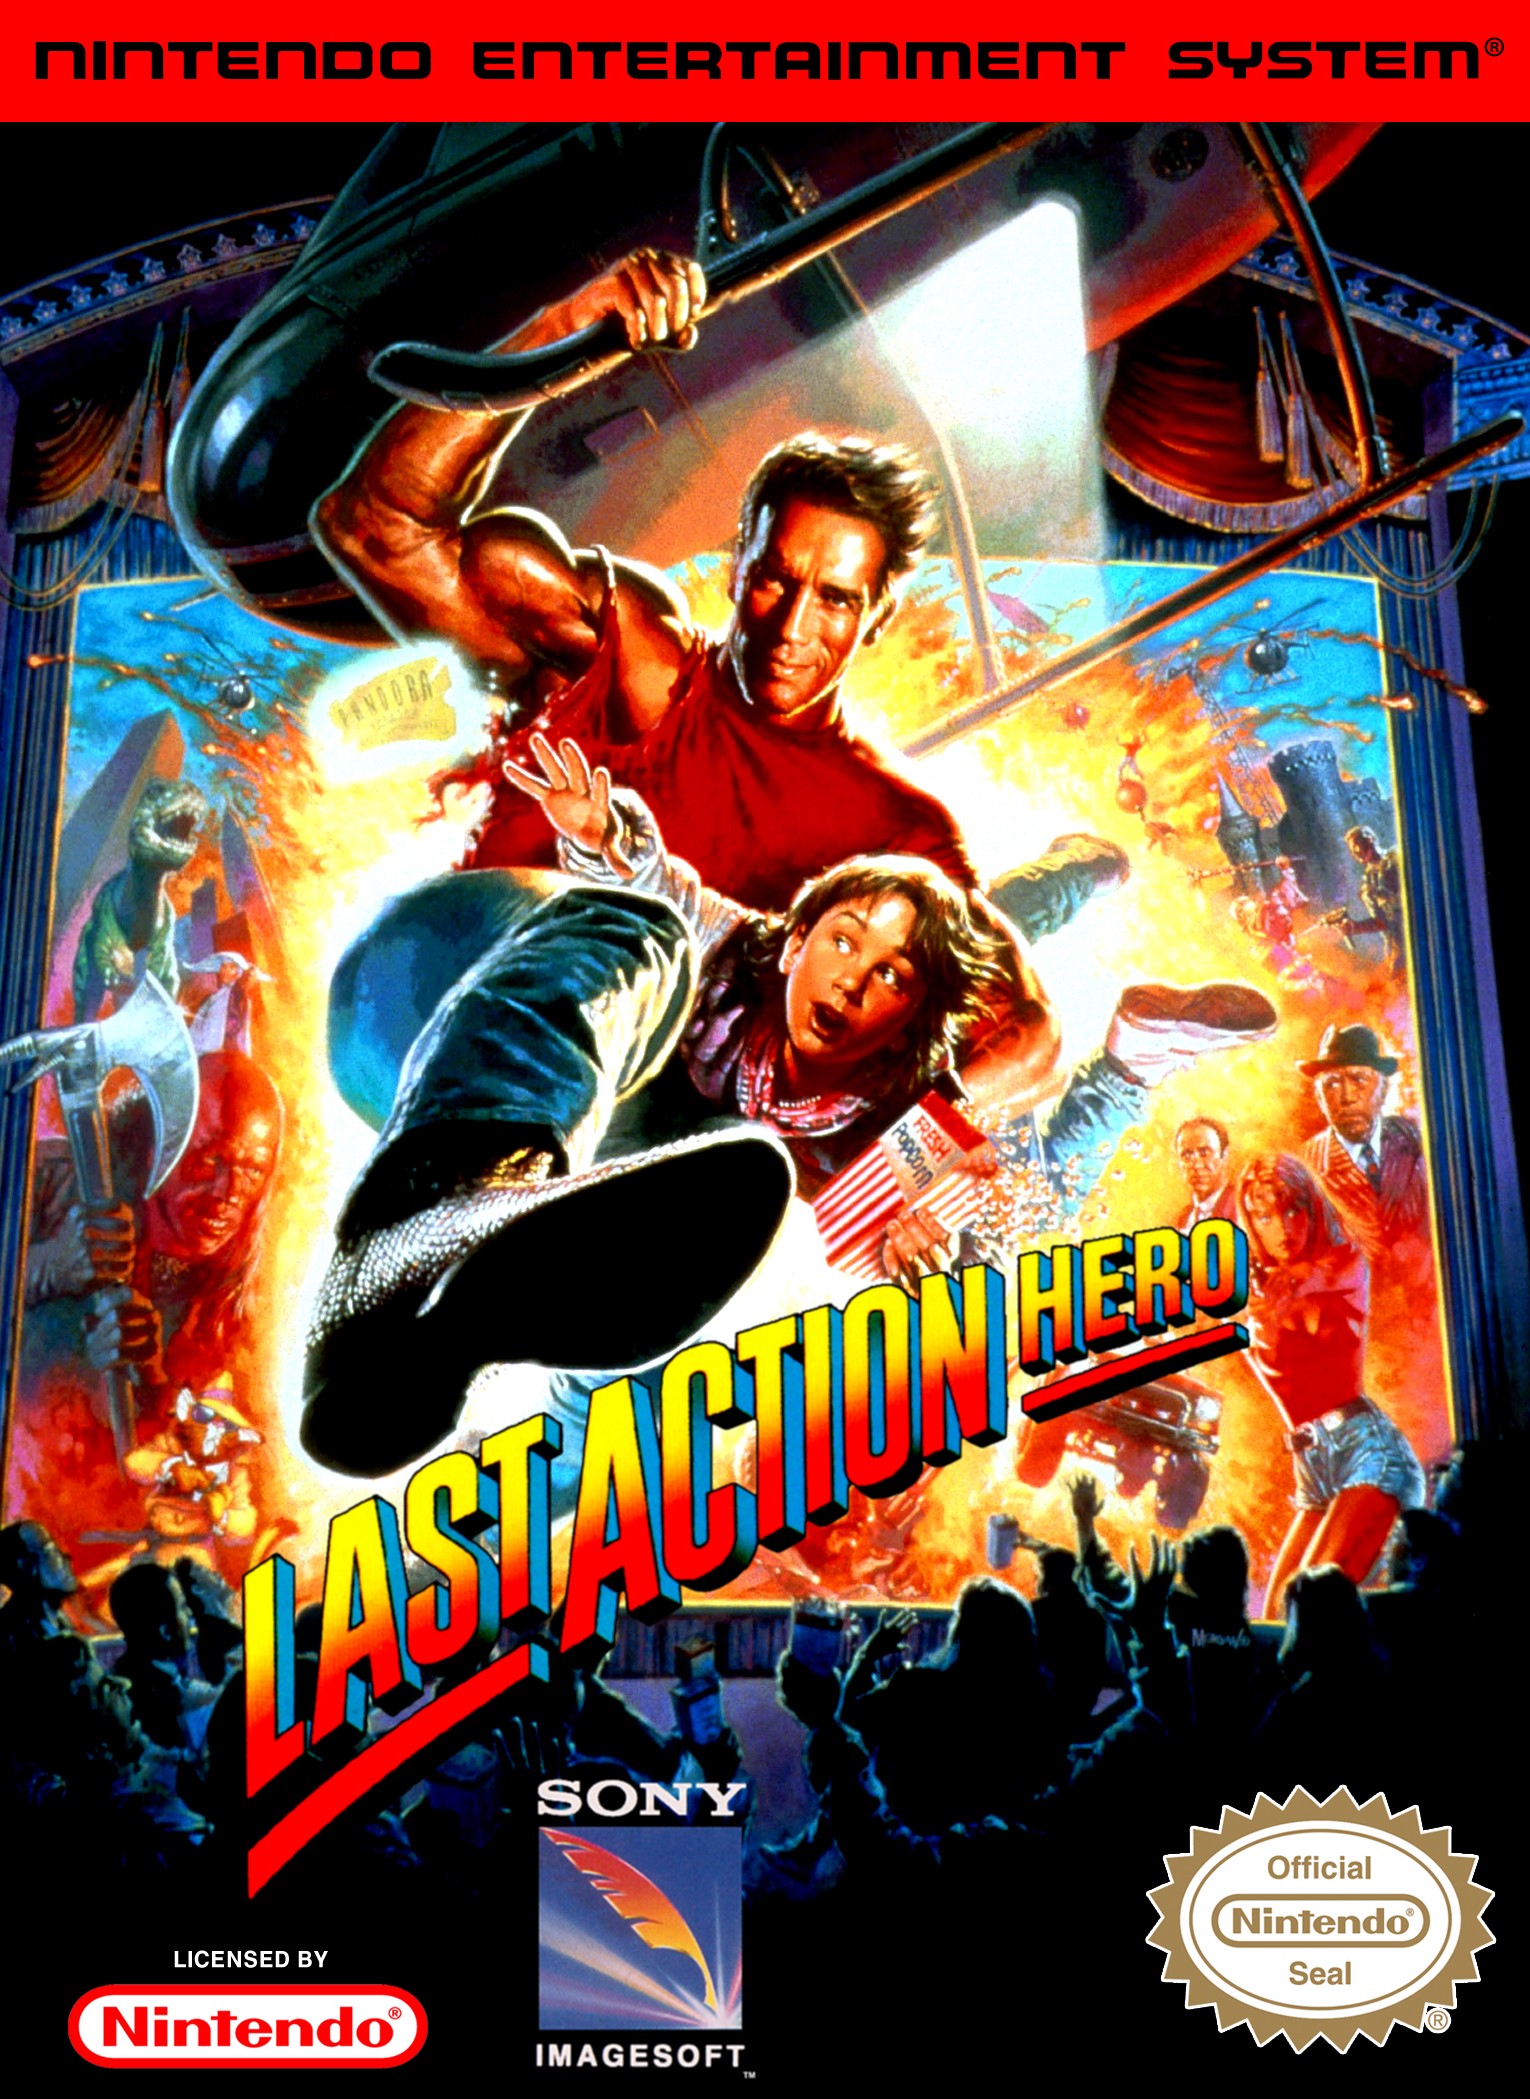 'Last Action Hero'